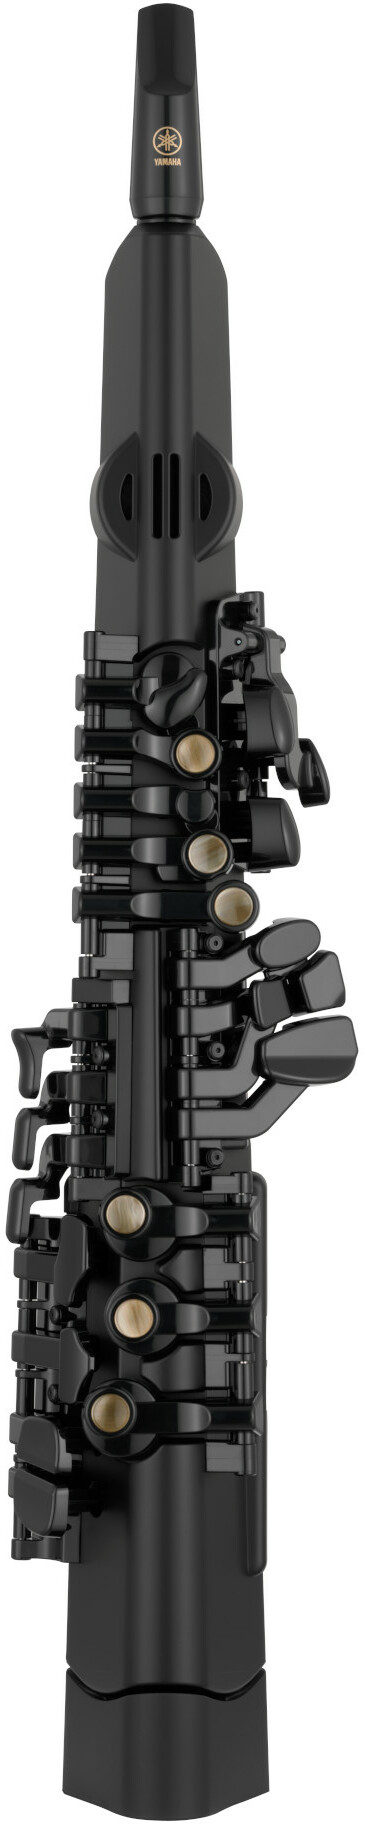 Yamaha Yds-120 Digital Saxophone - Elektronische Blasinstrumente - Main picture